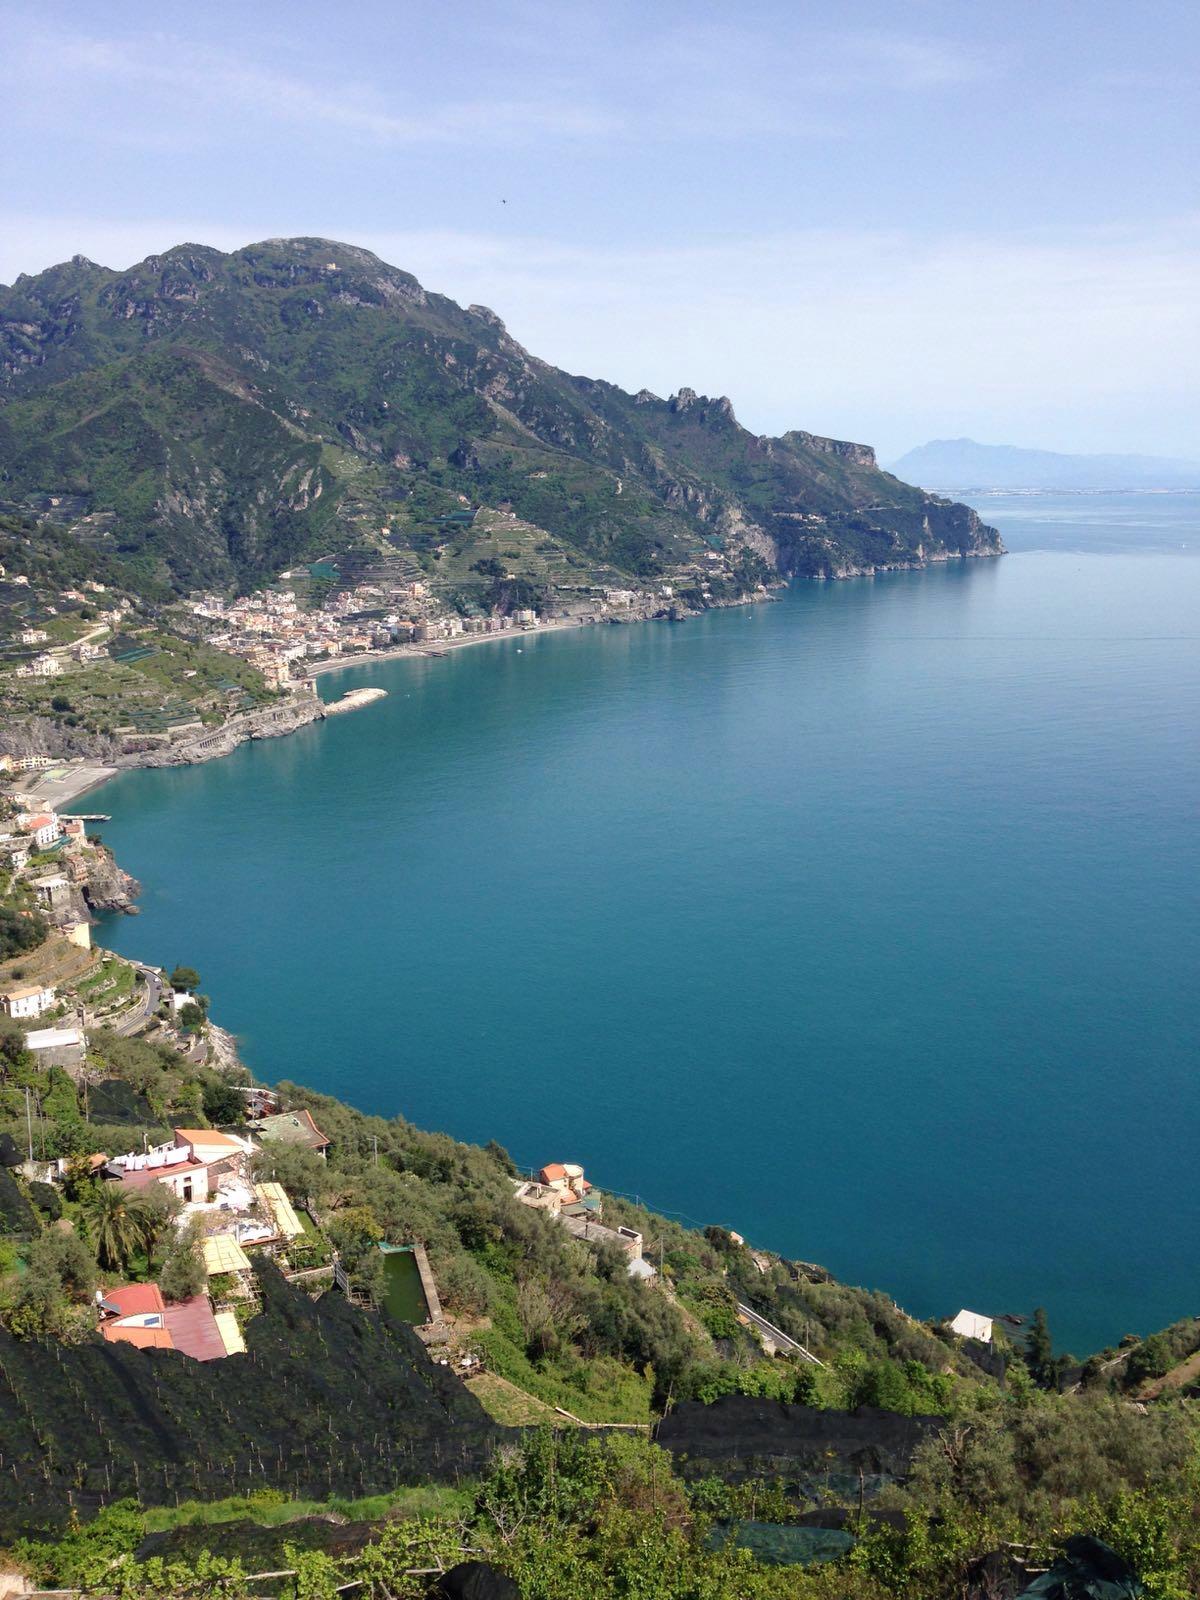 Excursion Amalfi Coast